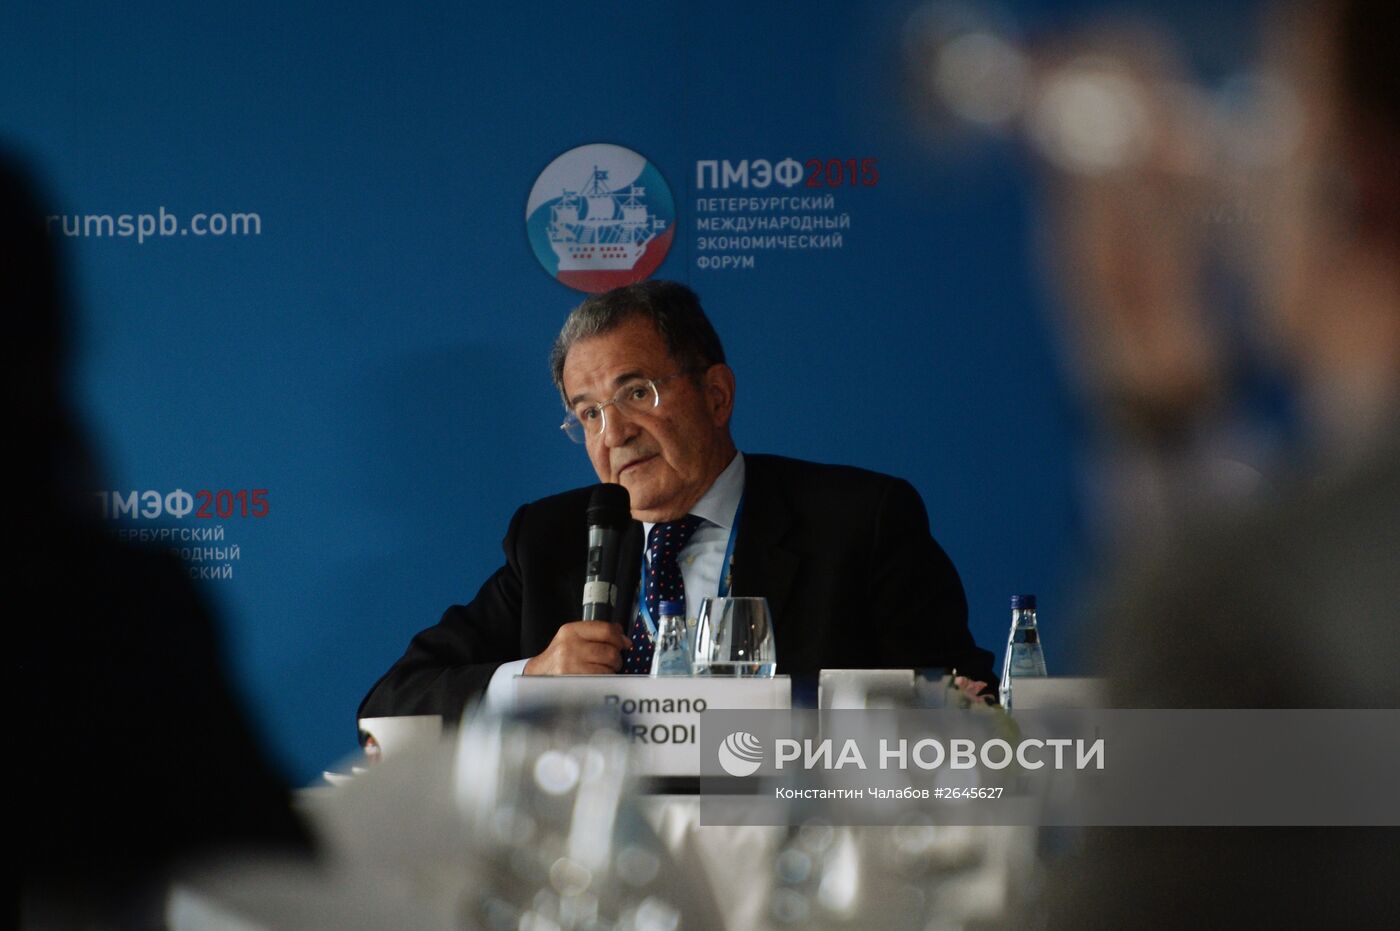 Панельная сессия "План сближения России и ЕС" в рамках ПМЭФ 2015